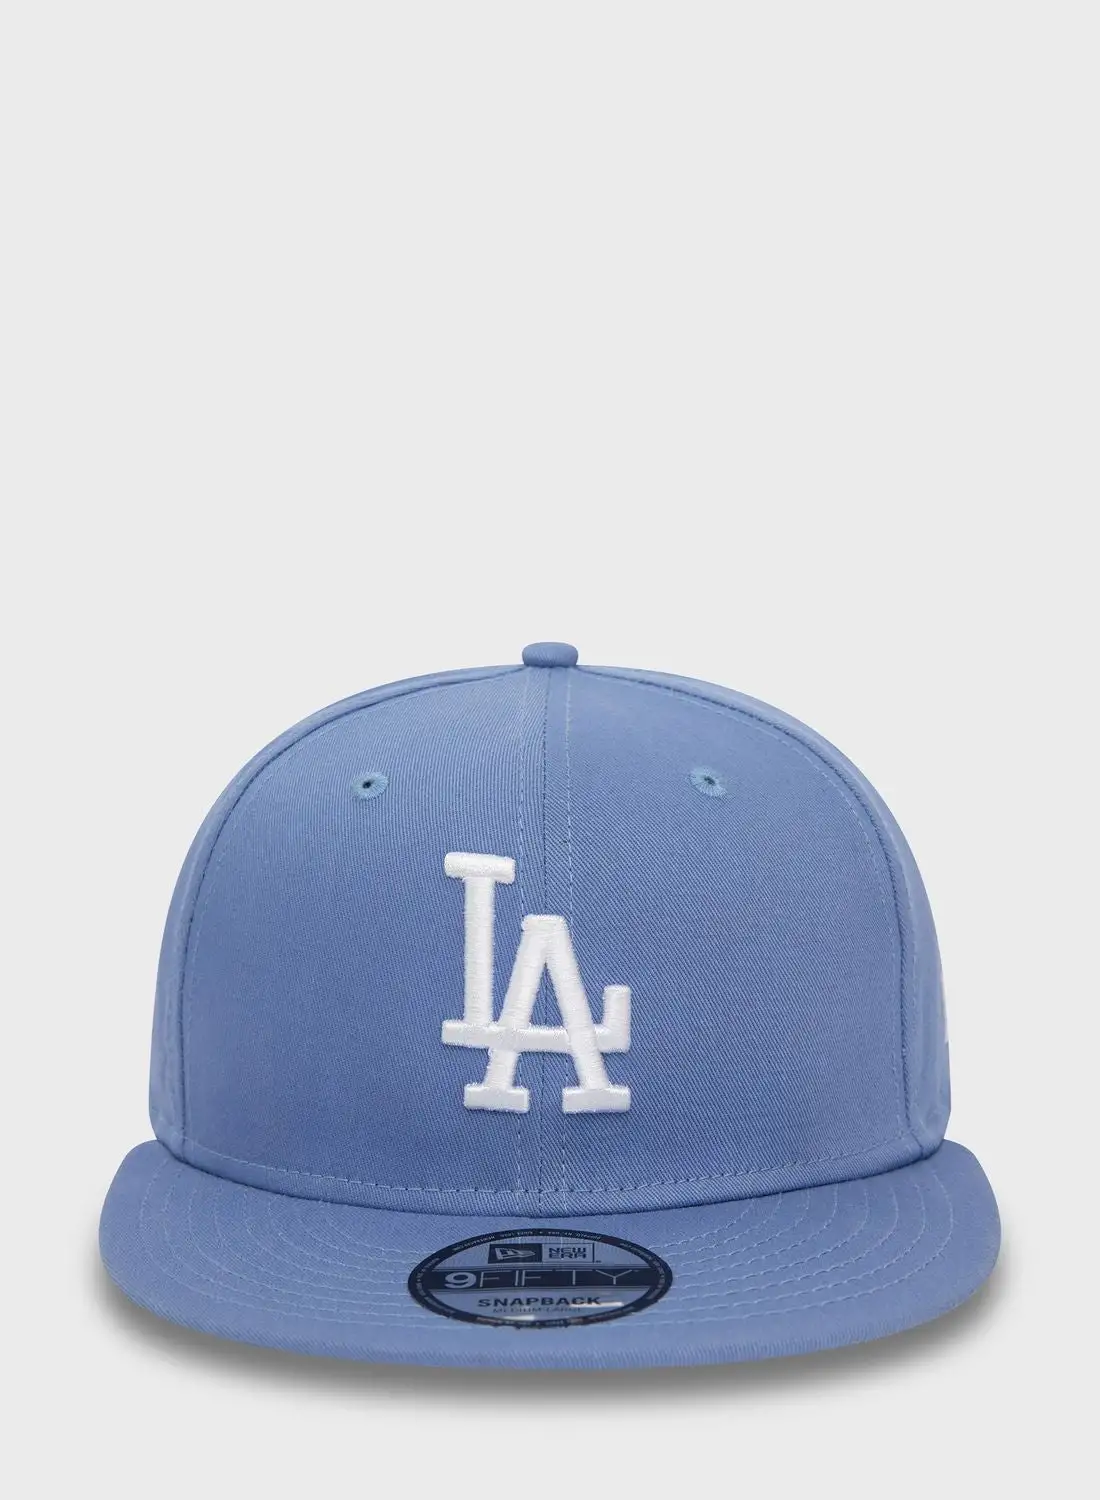 NEW ERA 9Fifty Los Angeles Dodgers Cap